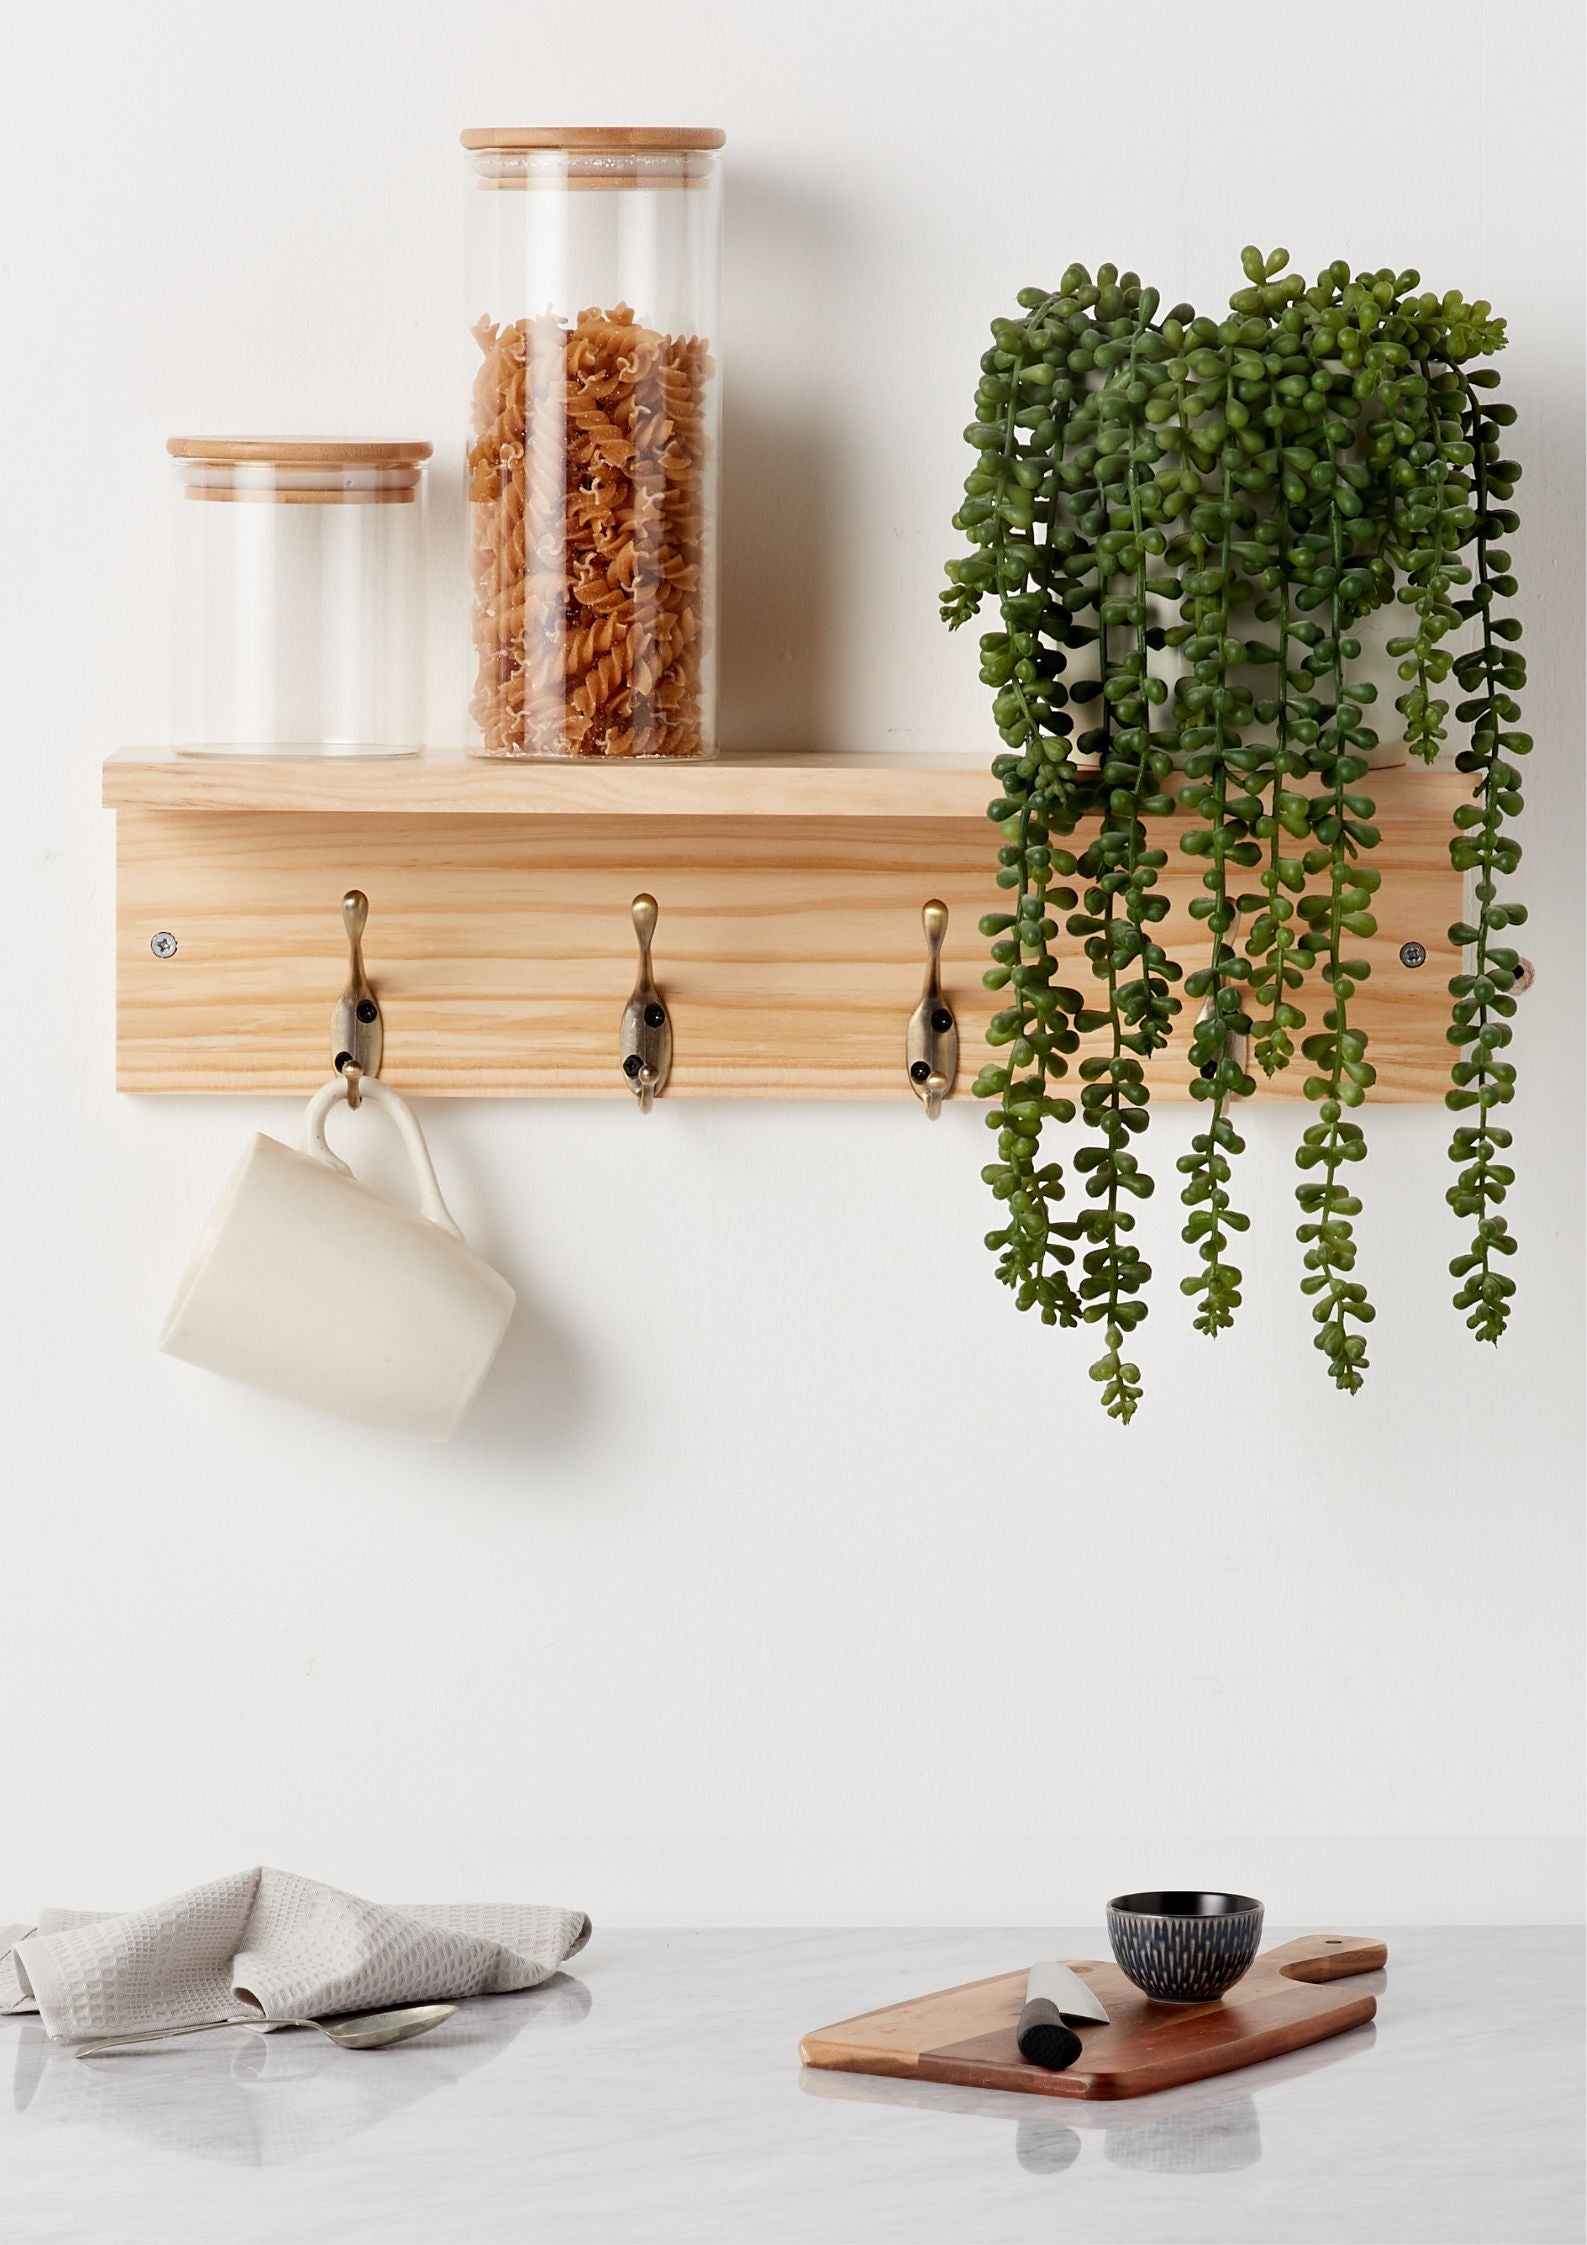 Haus Projekt Pine Shelf with 4 Brass Hooks - 11.5H x 45W x 11.5D (cm)